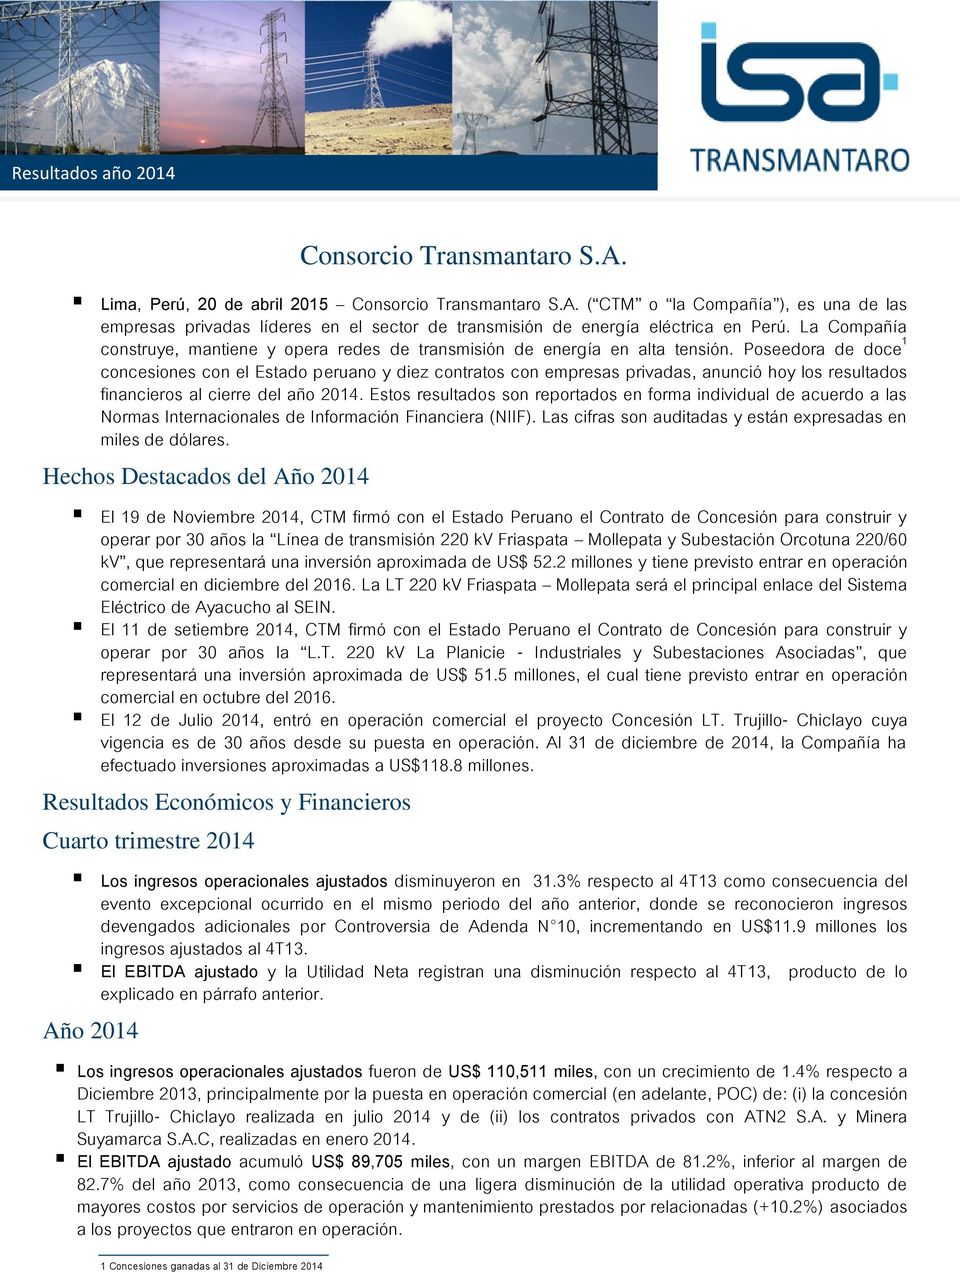 Poseedora de doce 1 concesiones con el Estado peruano y diez contratos con empresas privadas, anunció hoy los resultados financieros al cierre del año 2014.